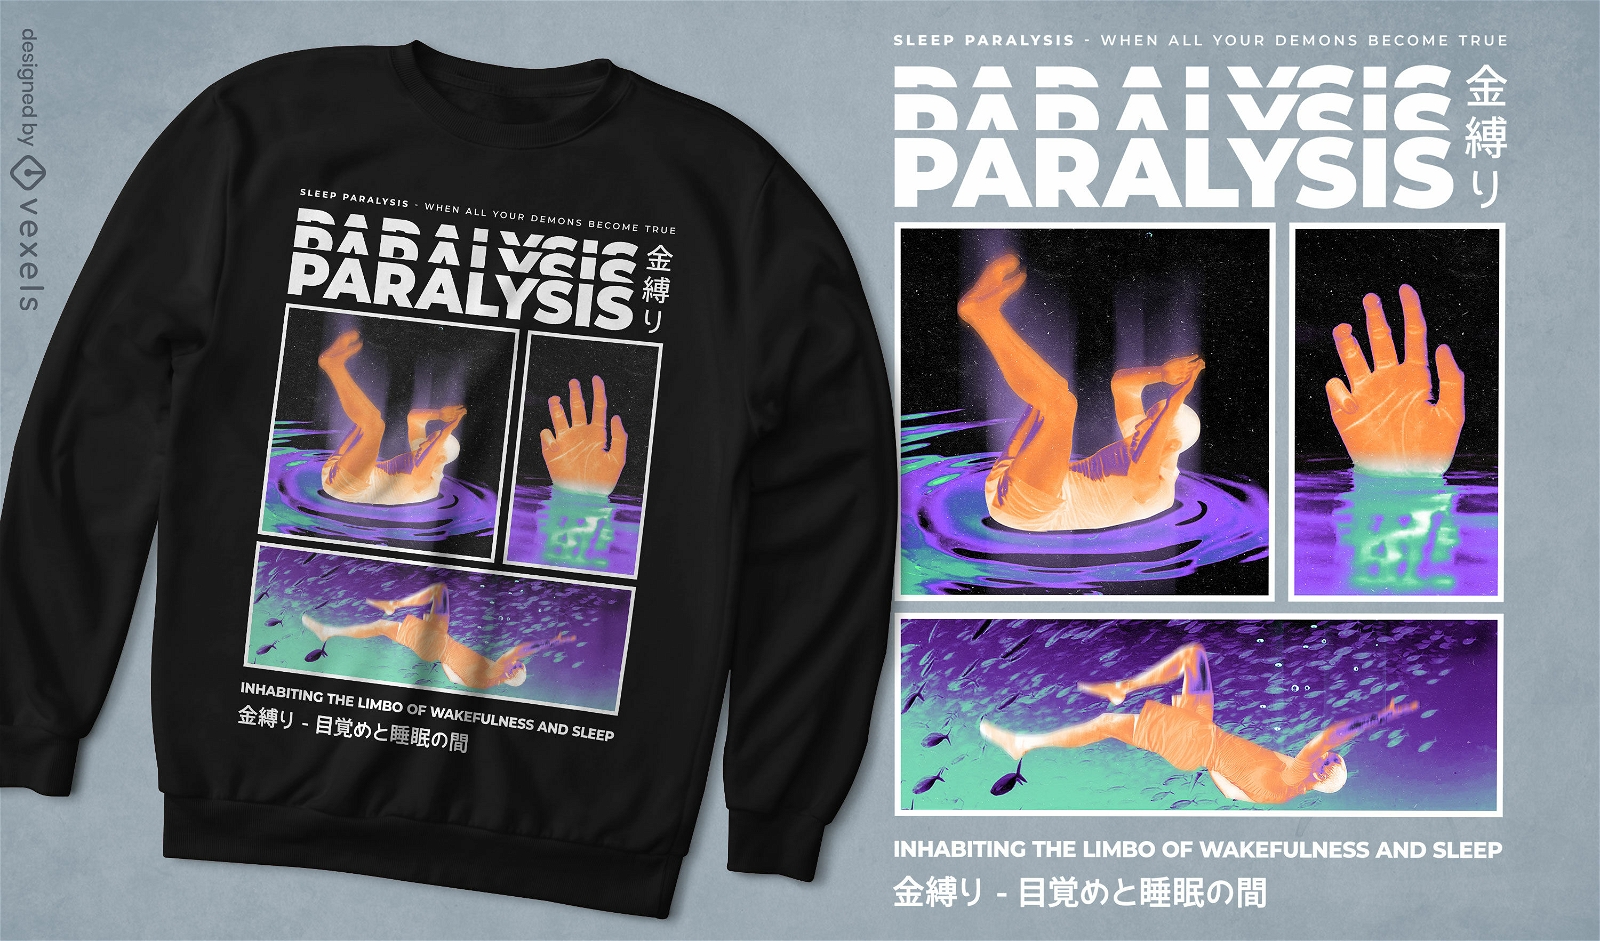 Sleep paralysis t-shirt design